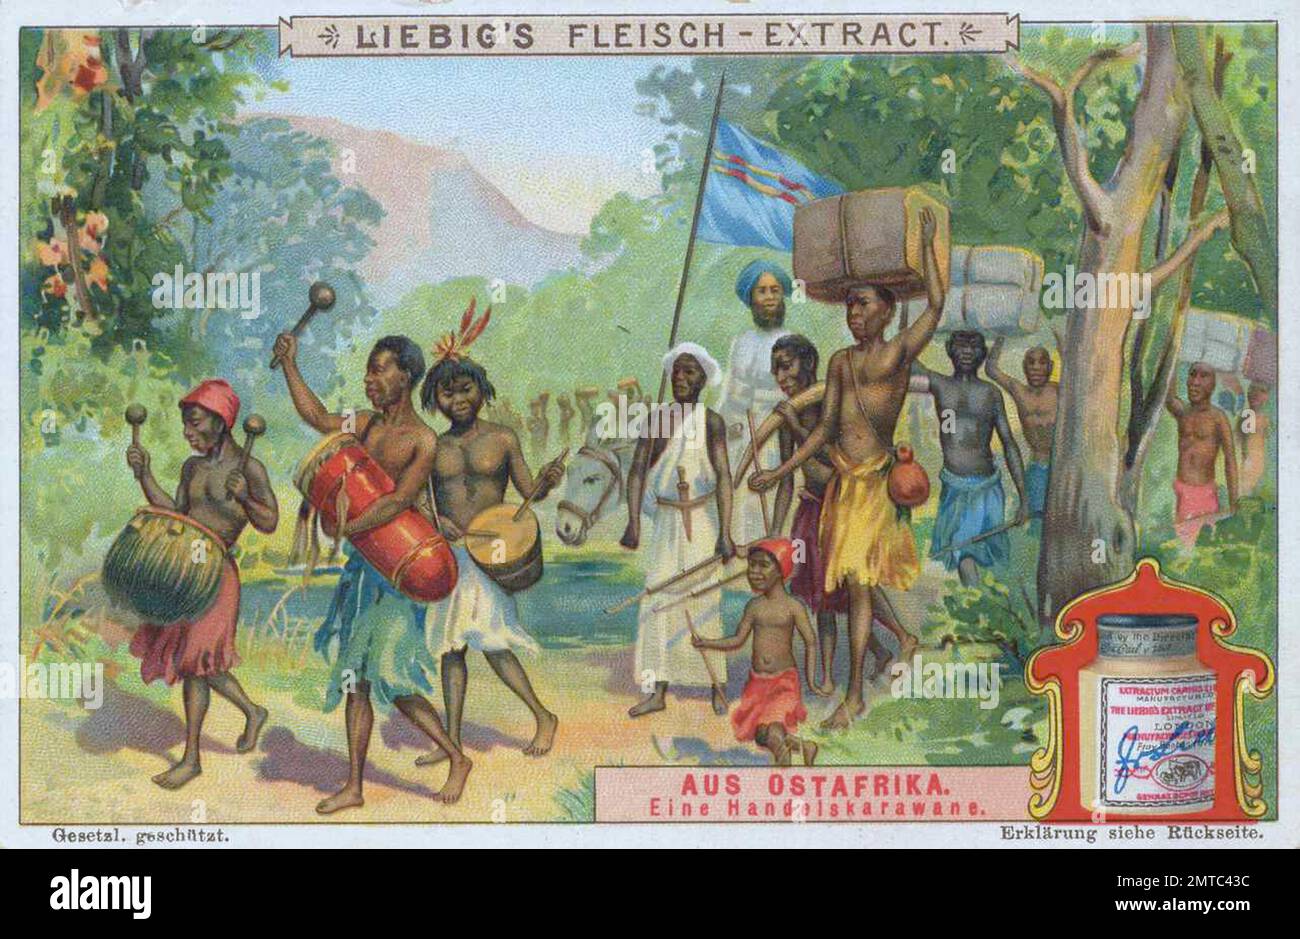 Bilderserie aus Ostafrika, eine Handelskarawane, digital restaurierte Reproduktion eines Sammelbildes von ca 1900, gemeinfrei, genaues Datum unbekannt  / Stock Photo